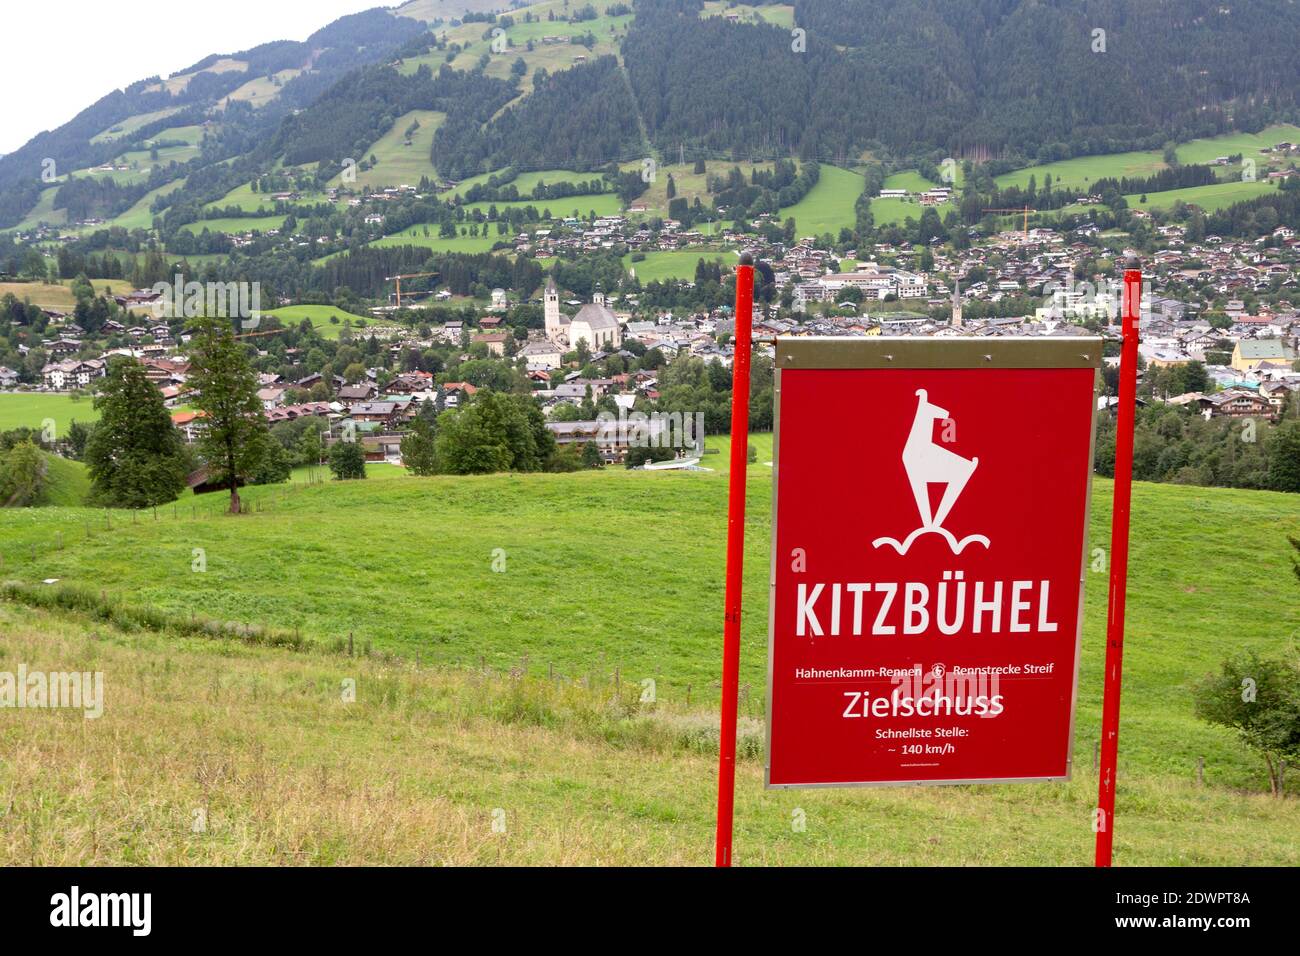 Zielschuss Streif Hahnenkammabfahrt mit Kitzbühel, Tirol, Österreich Foto Stock